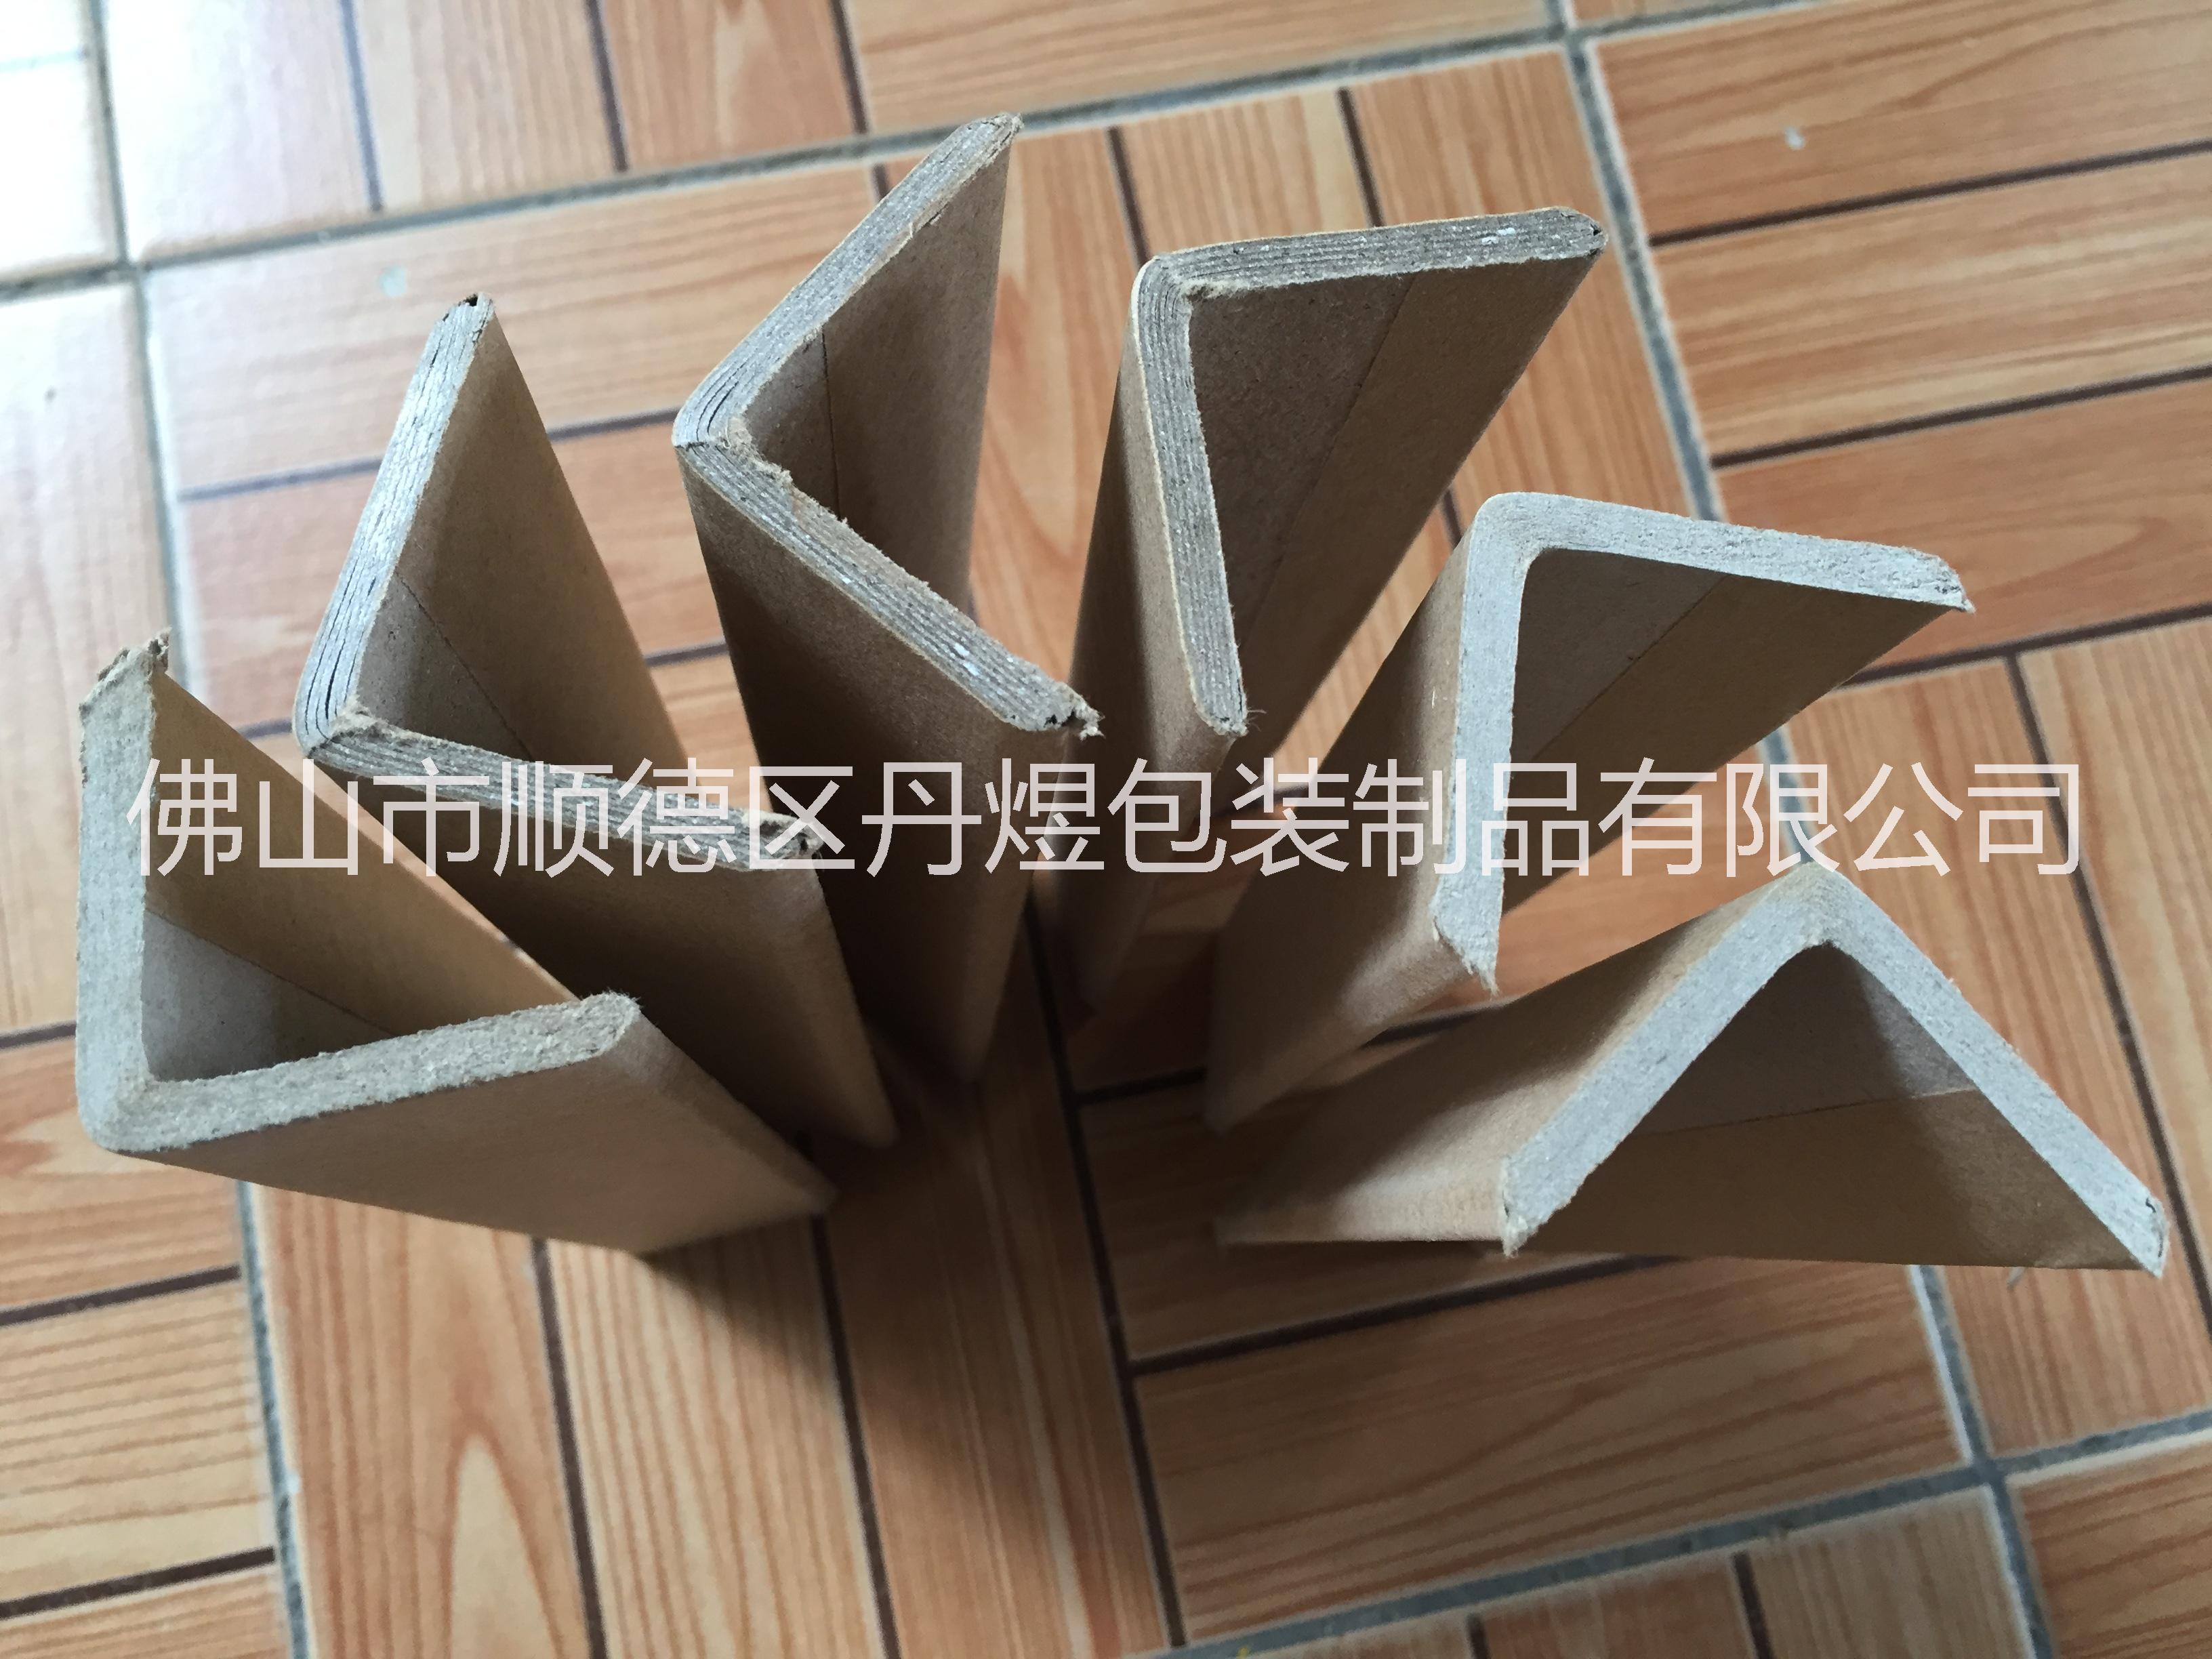 广州纸护角厂家-广州包装纸护角生产商-广州L型纸护角厂家定做